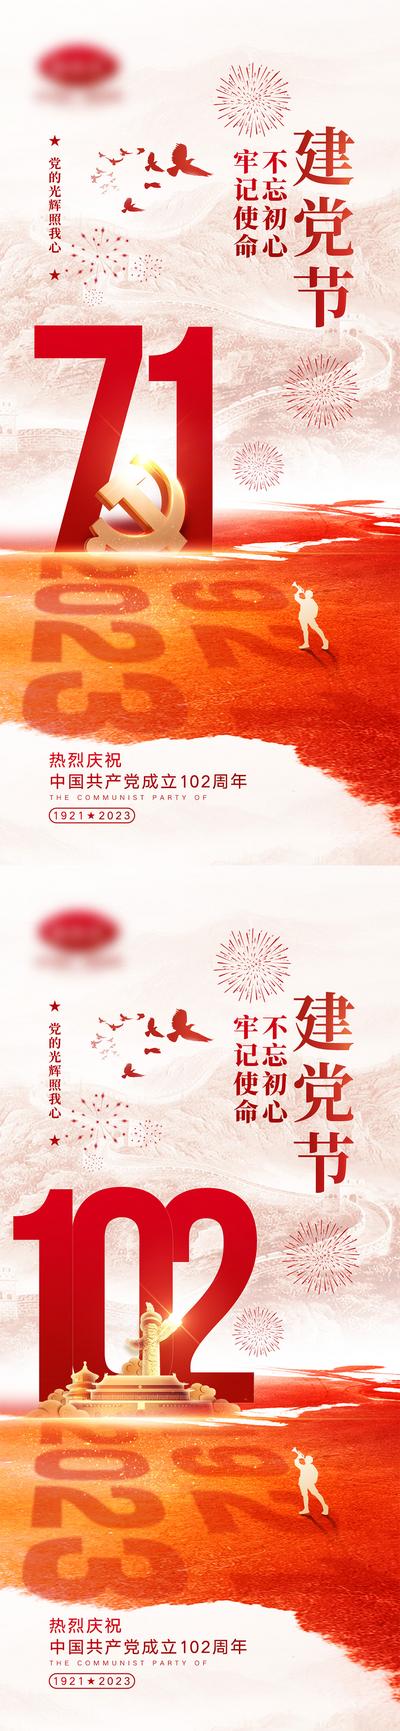 南门网 海报 公历节日 建党节 102周年 天安门 军人 系列